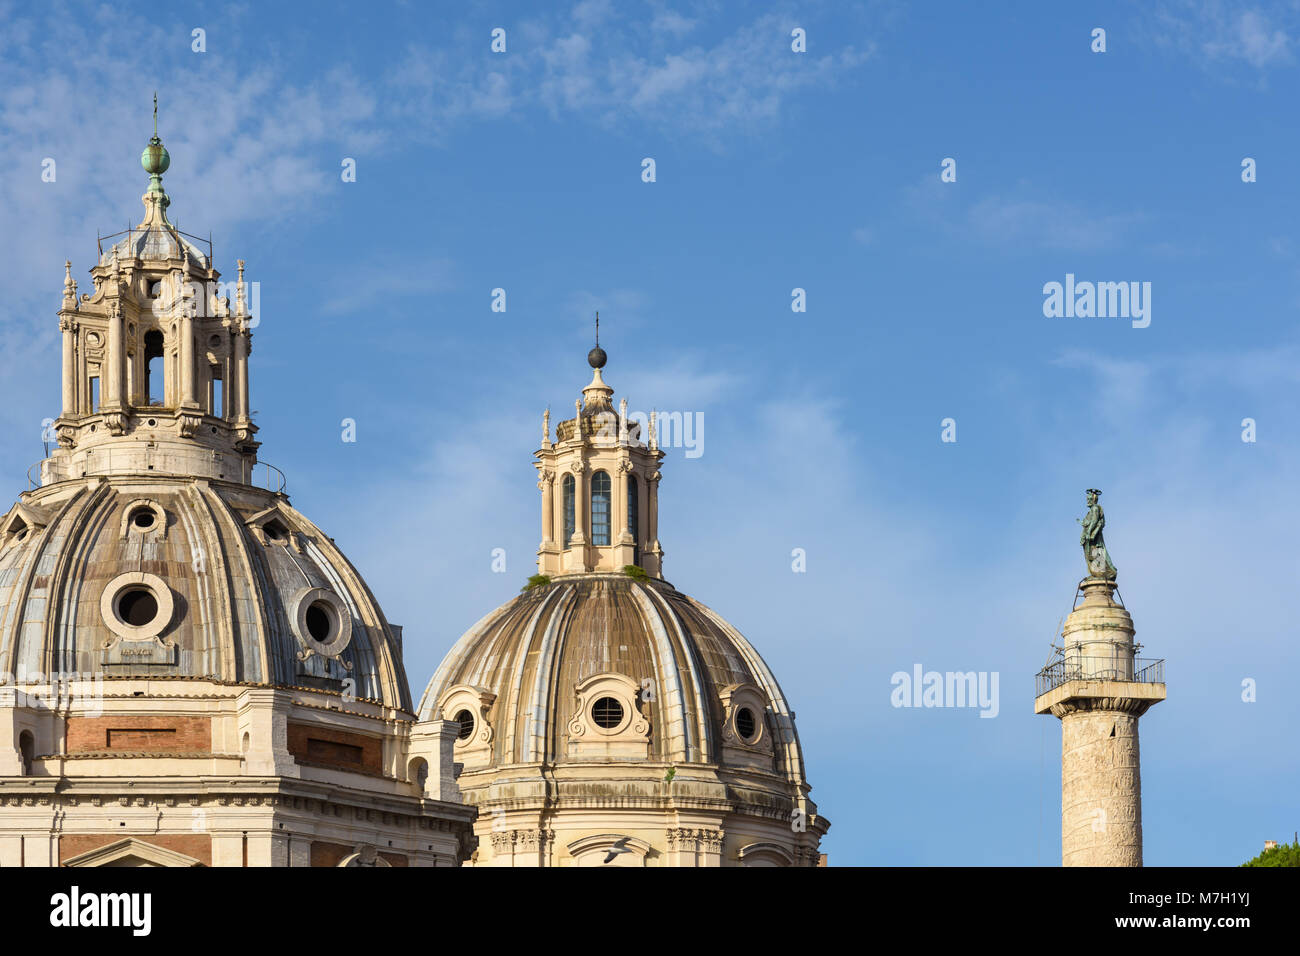 La Colonne Trajane et dômes de églises, Rome, Italie Banque D'Images